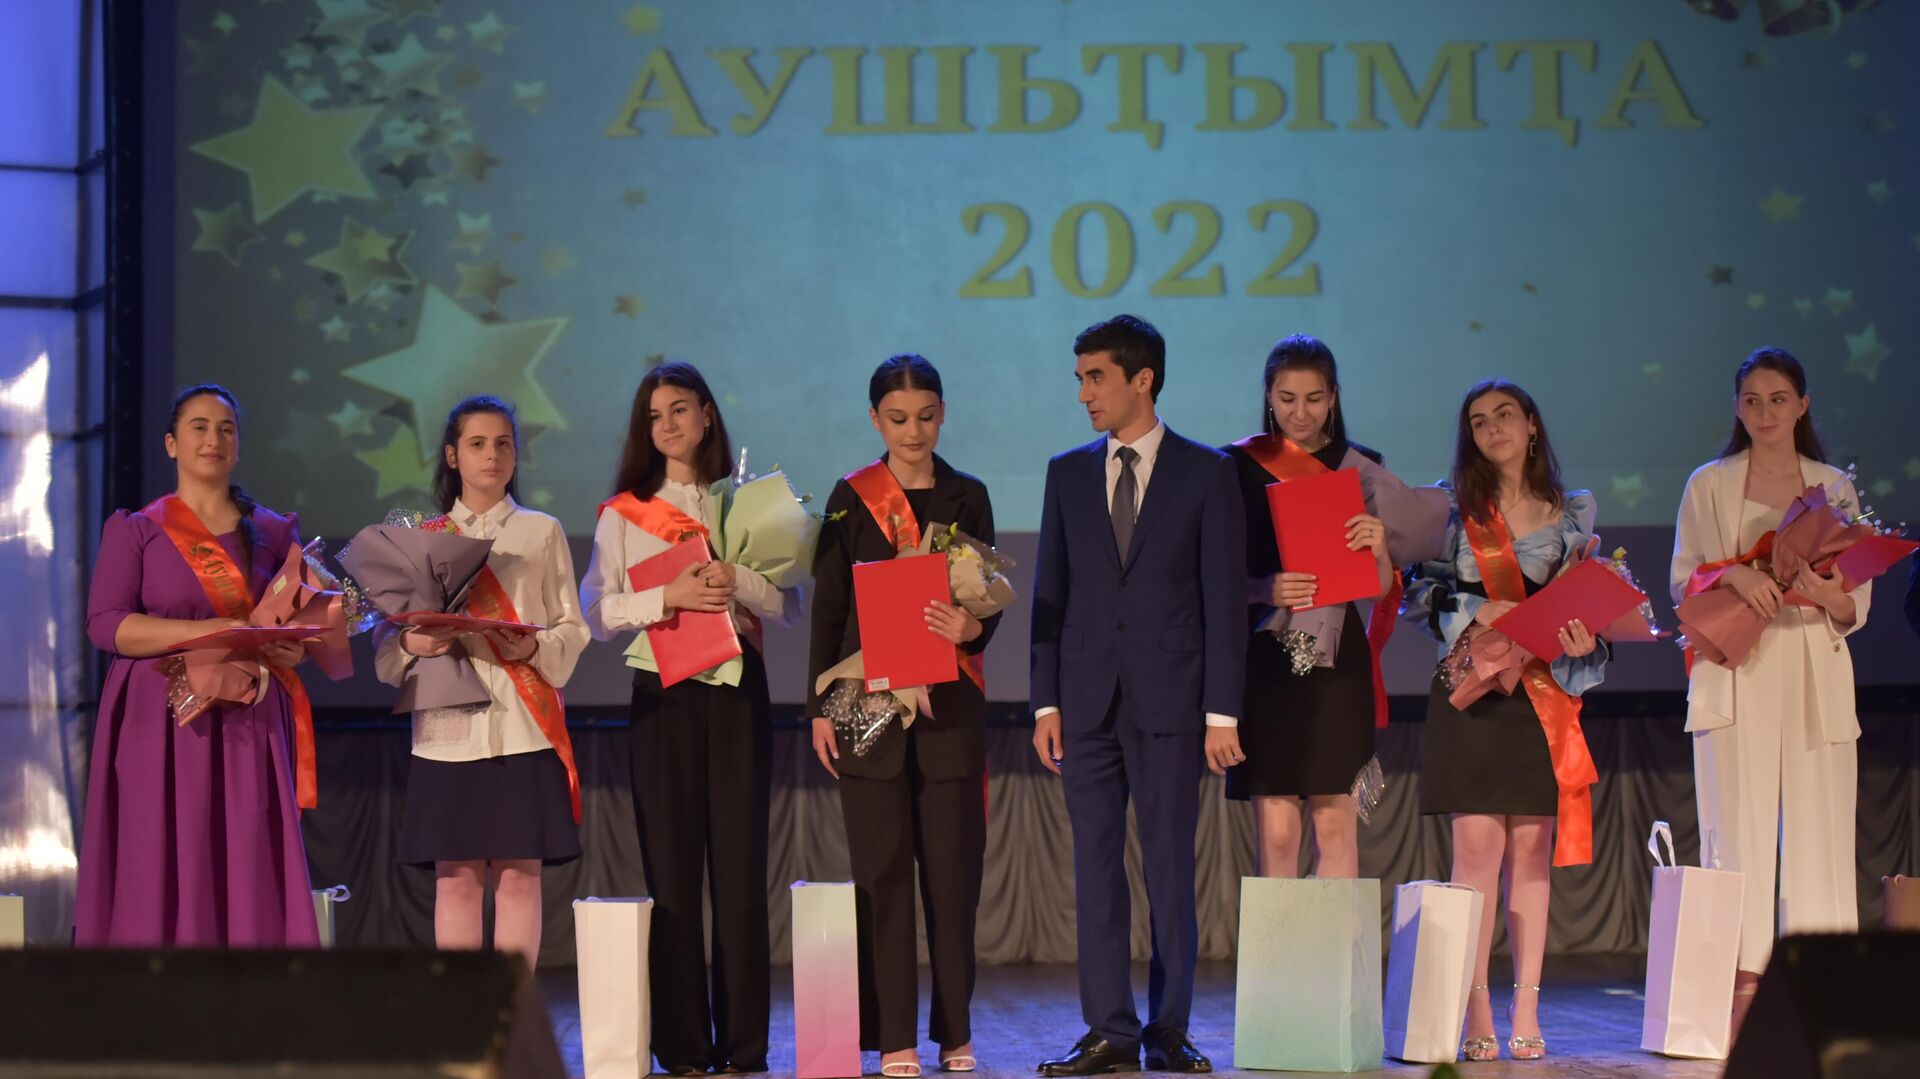 Вручение медалей выпускникам школ 2022 год  - Sputnik Абхазия, 1920, 02.07.2022